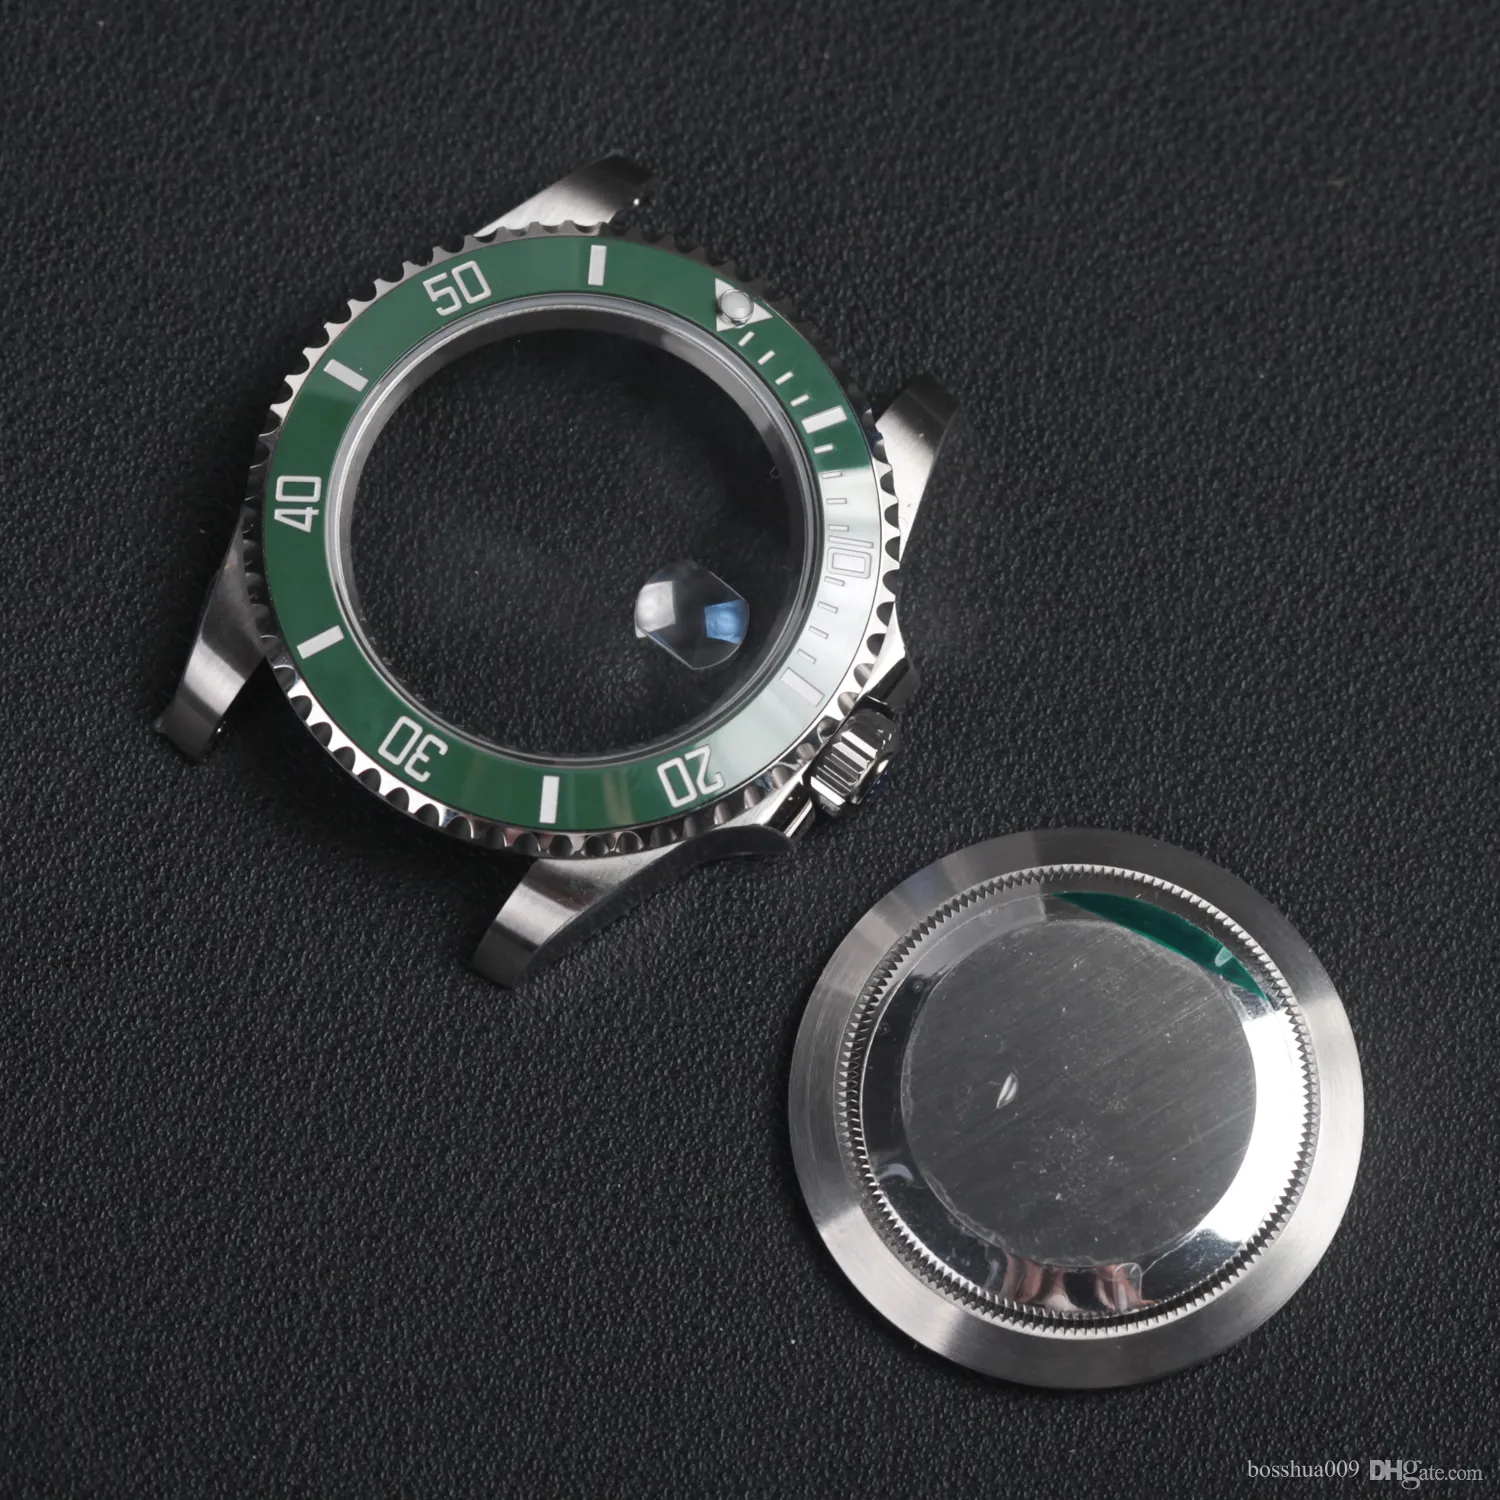 Piezas de reloj con movimiento 41mm 3235, caja de reloj de acero inoxidable 904l con esfera de cristal de zafiro, bisel de cerámica verde 126610